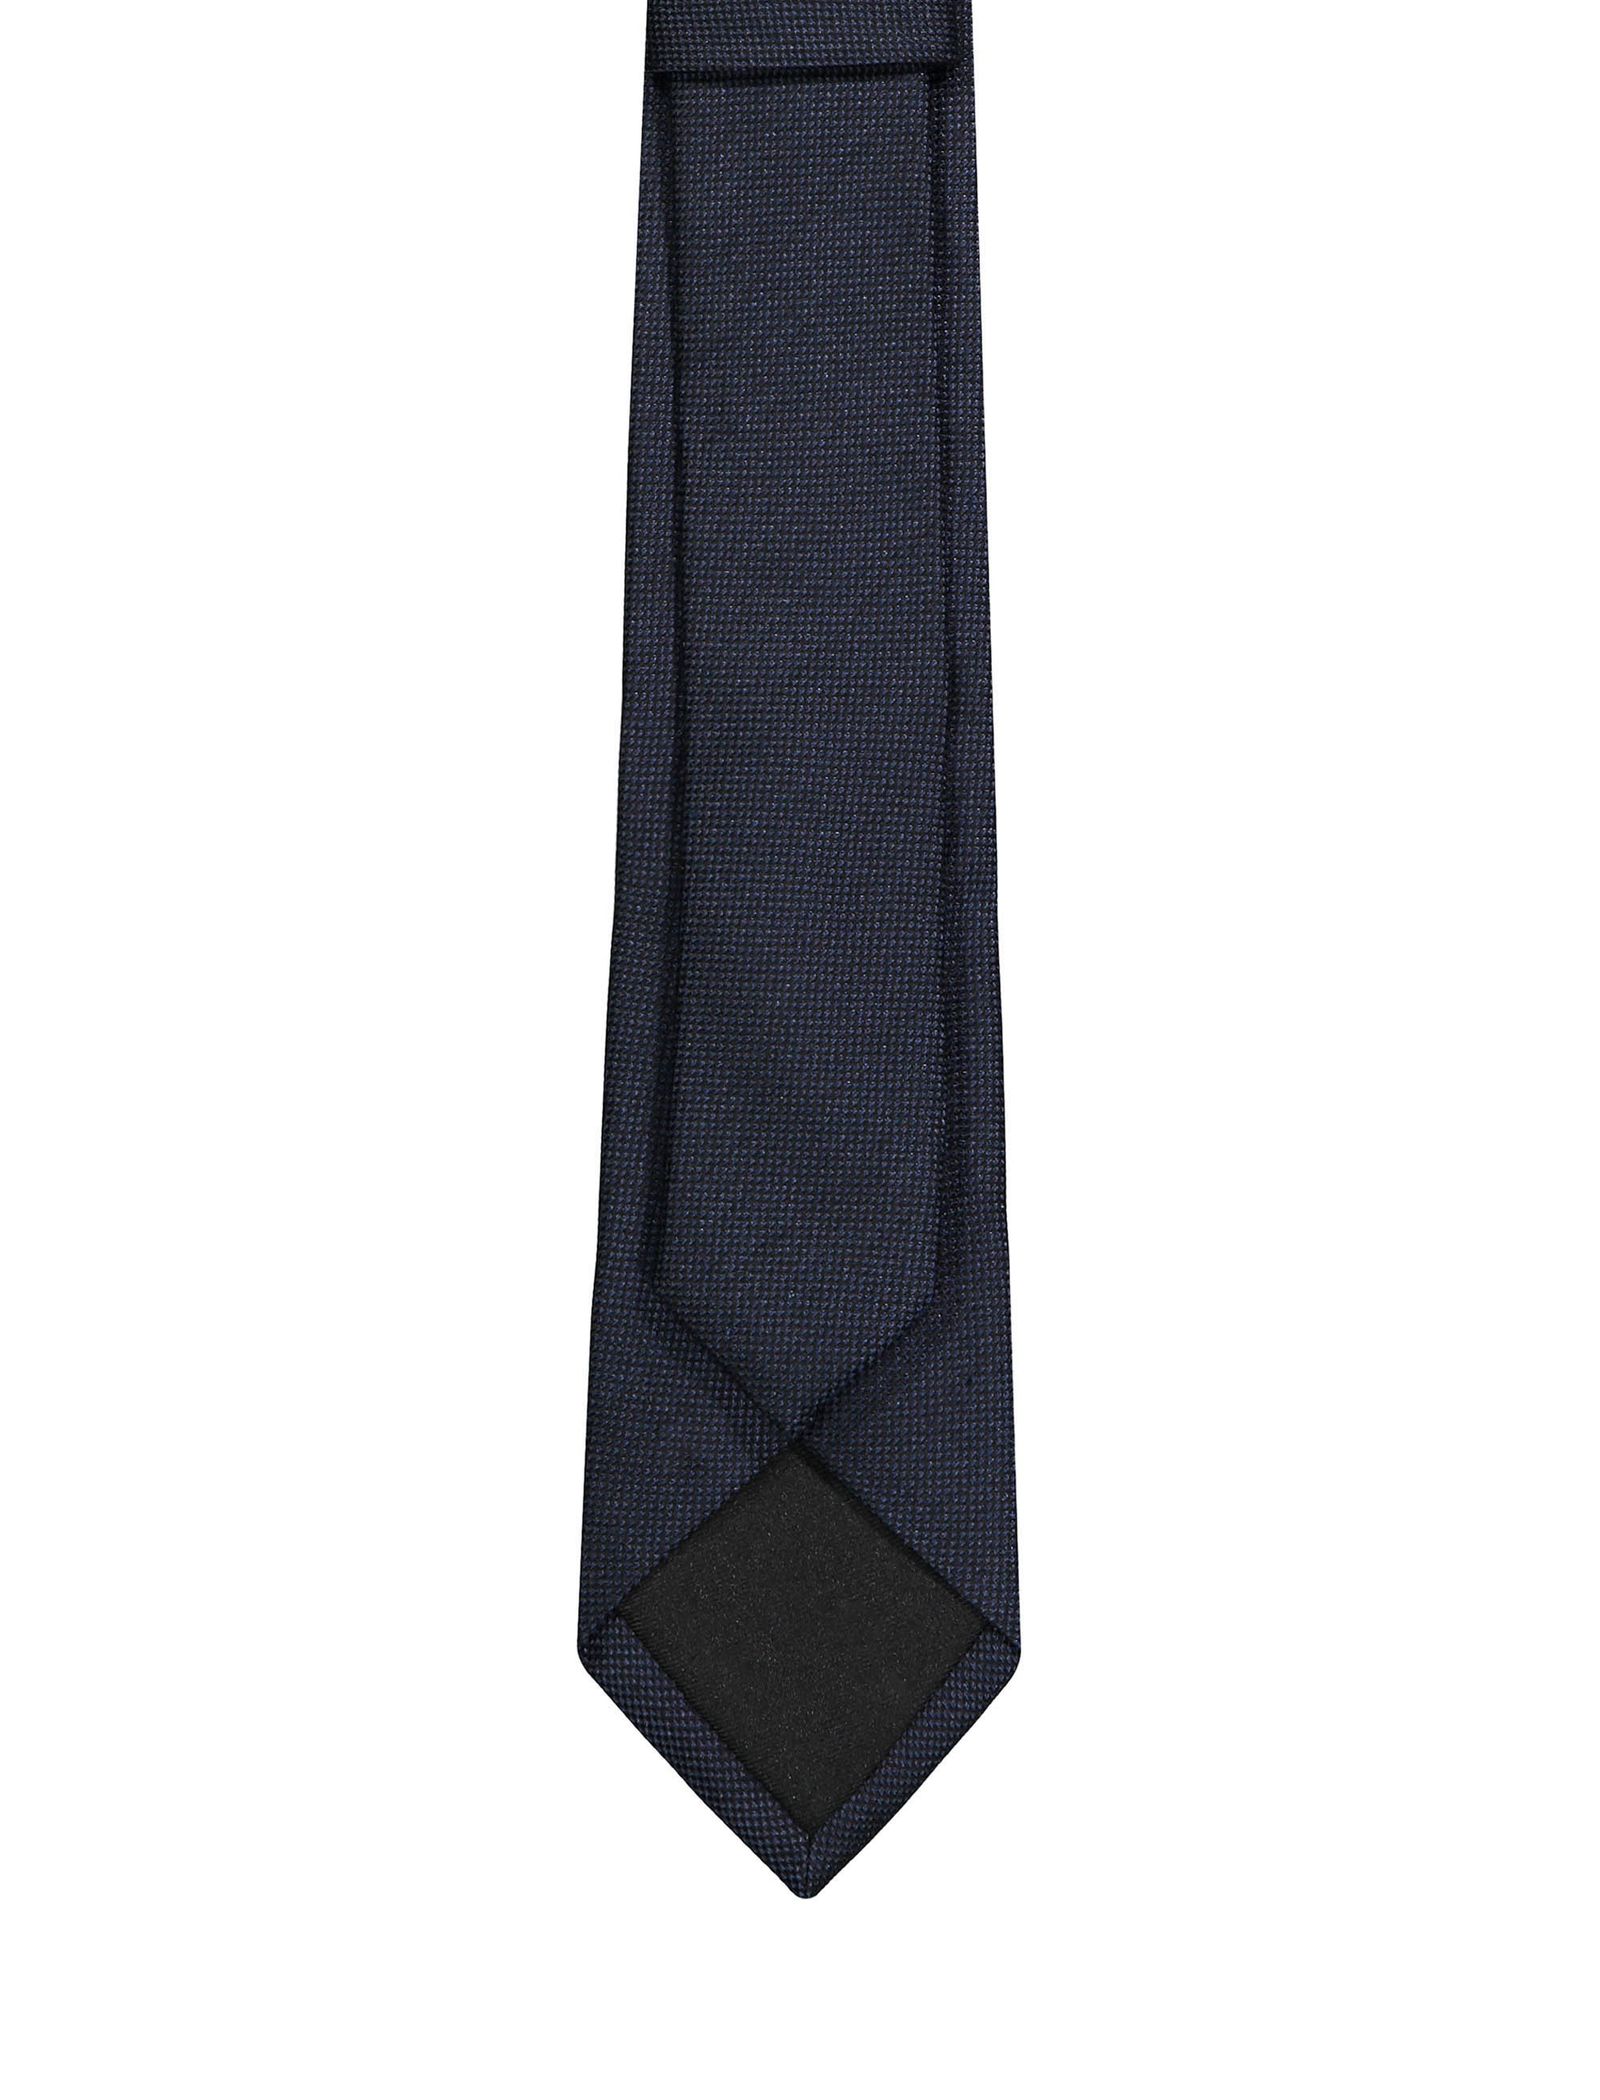 کراوات ابریشمی ساده مردانه - سلیو تک سایز - آبي کاربني - 3